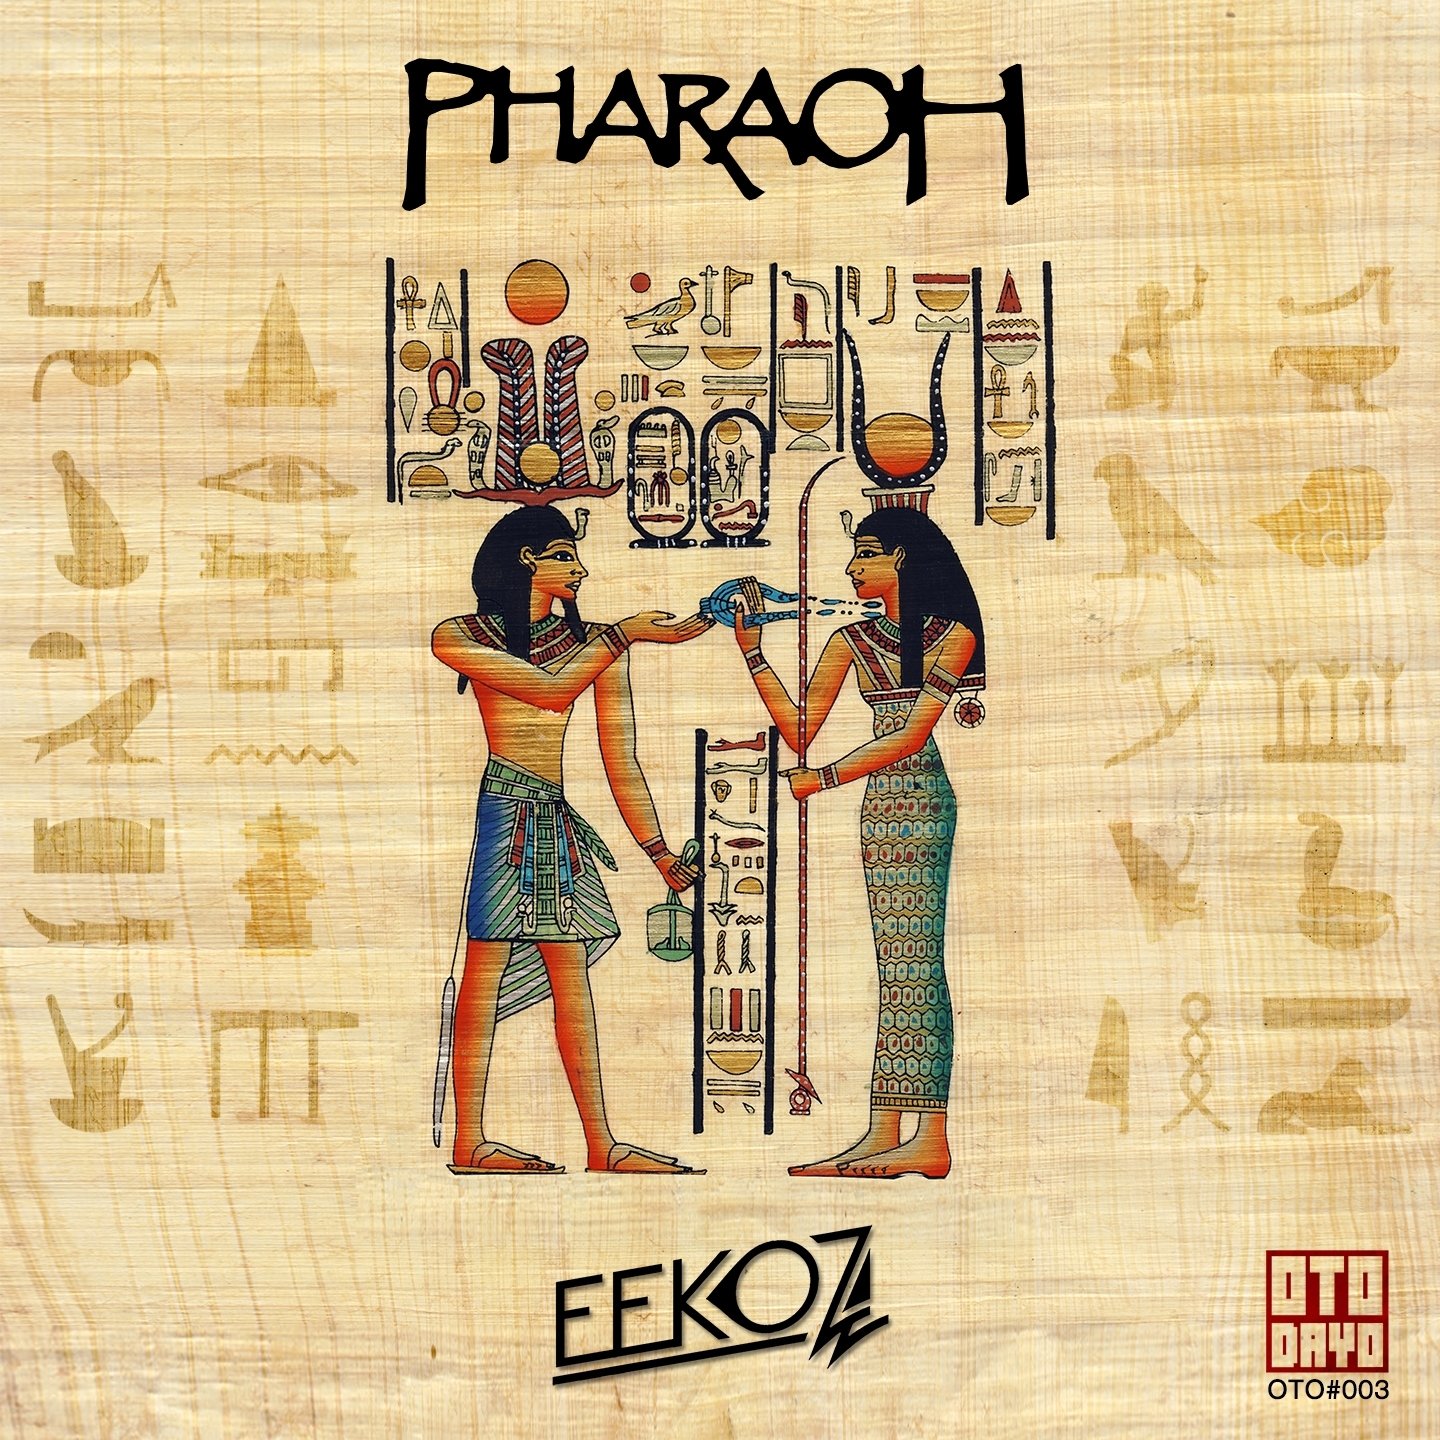 Фараон на букву т. Фараон по египетски надпись. Фараон на египетском языке. Фараон написание на египетском. Слово фараон на египетском языке.